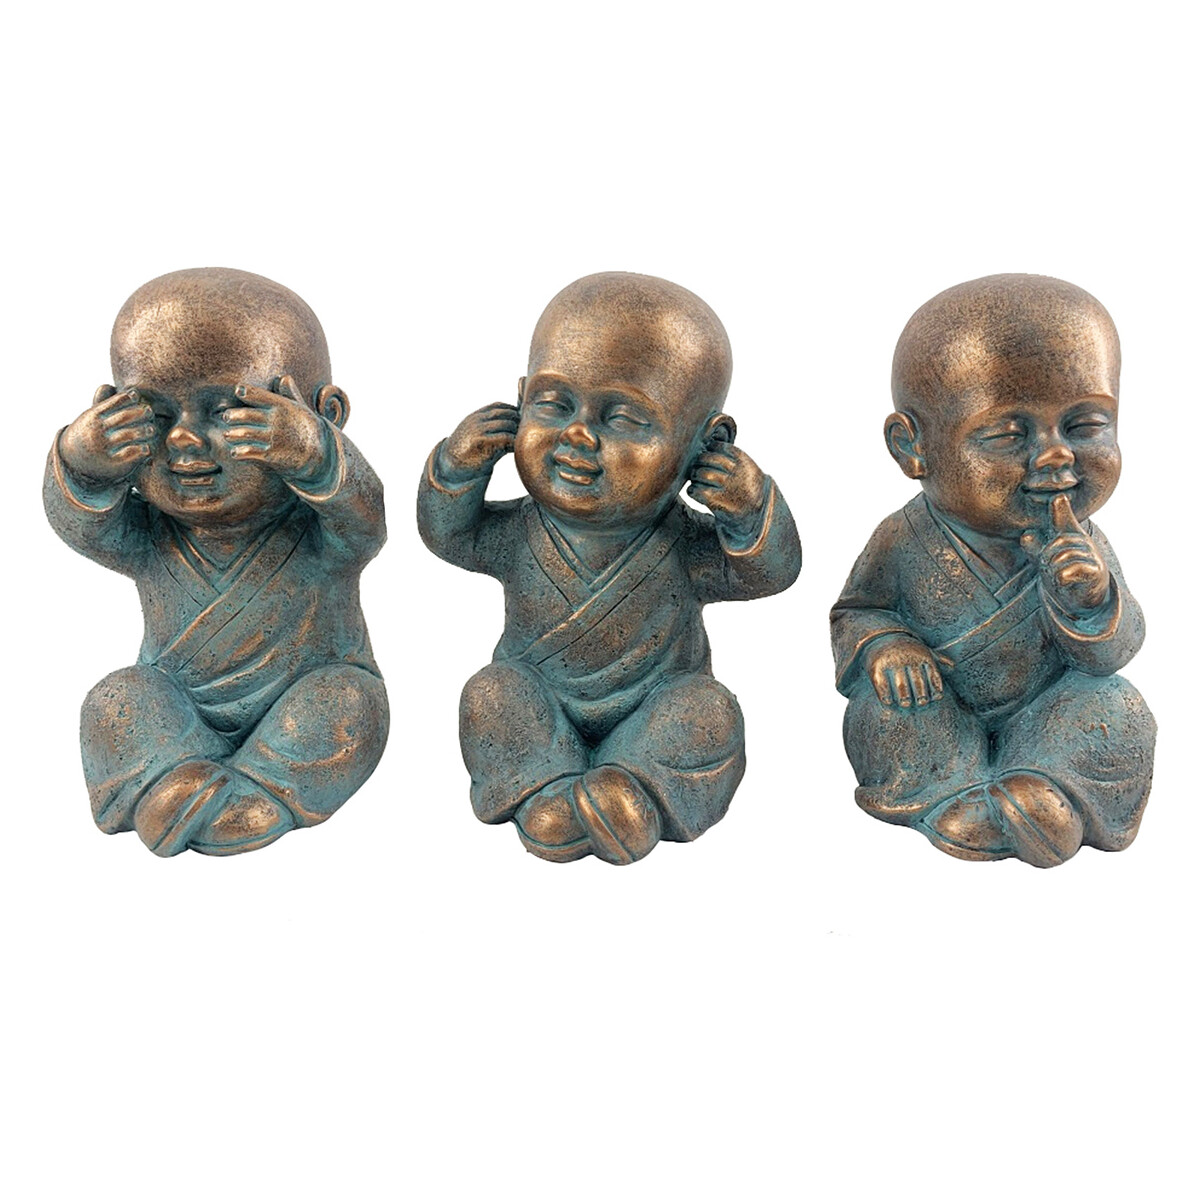 Home Statuetten und Figuren Signes Grimalt Abbildung Monk 3 Einheiten Blau